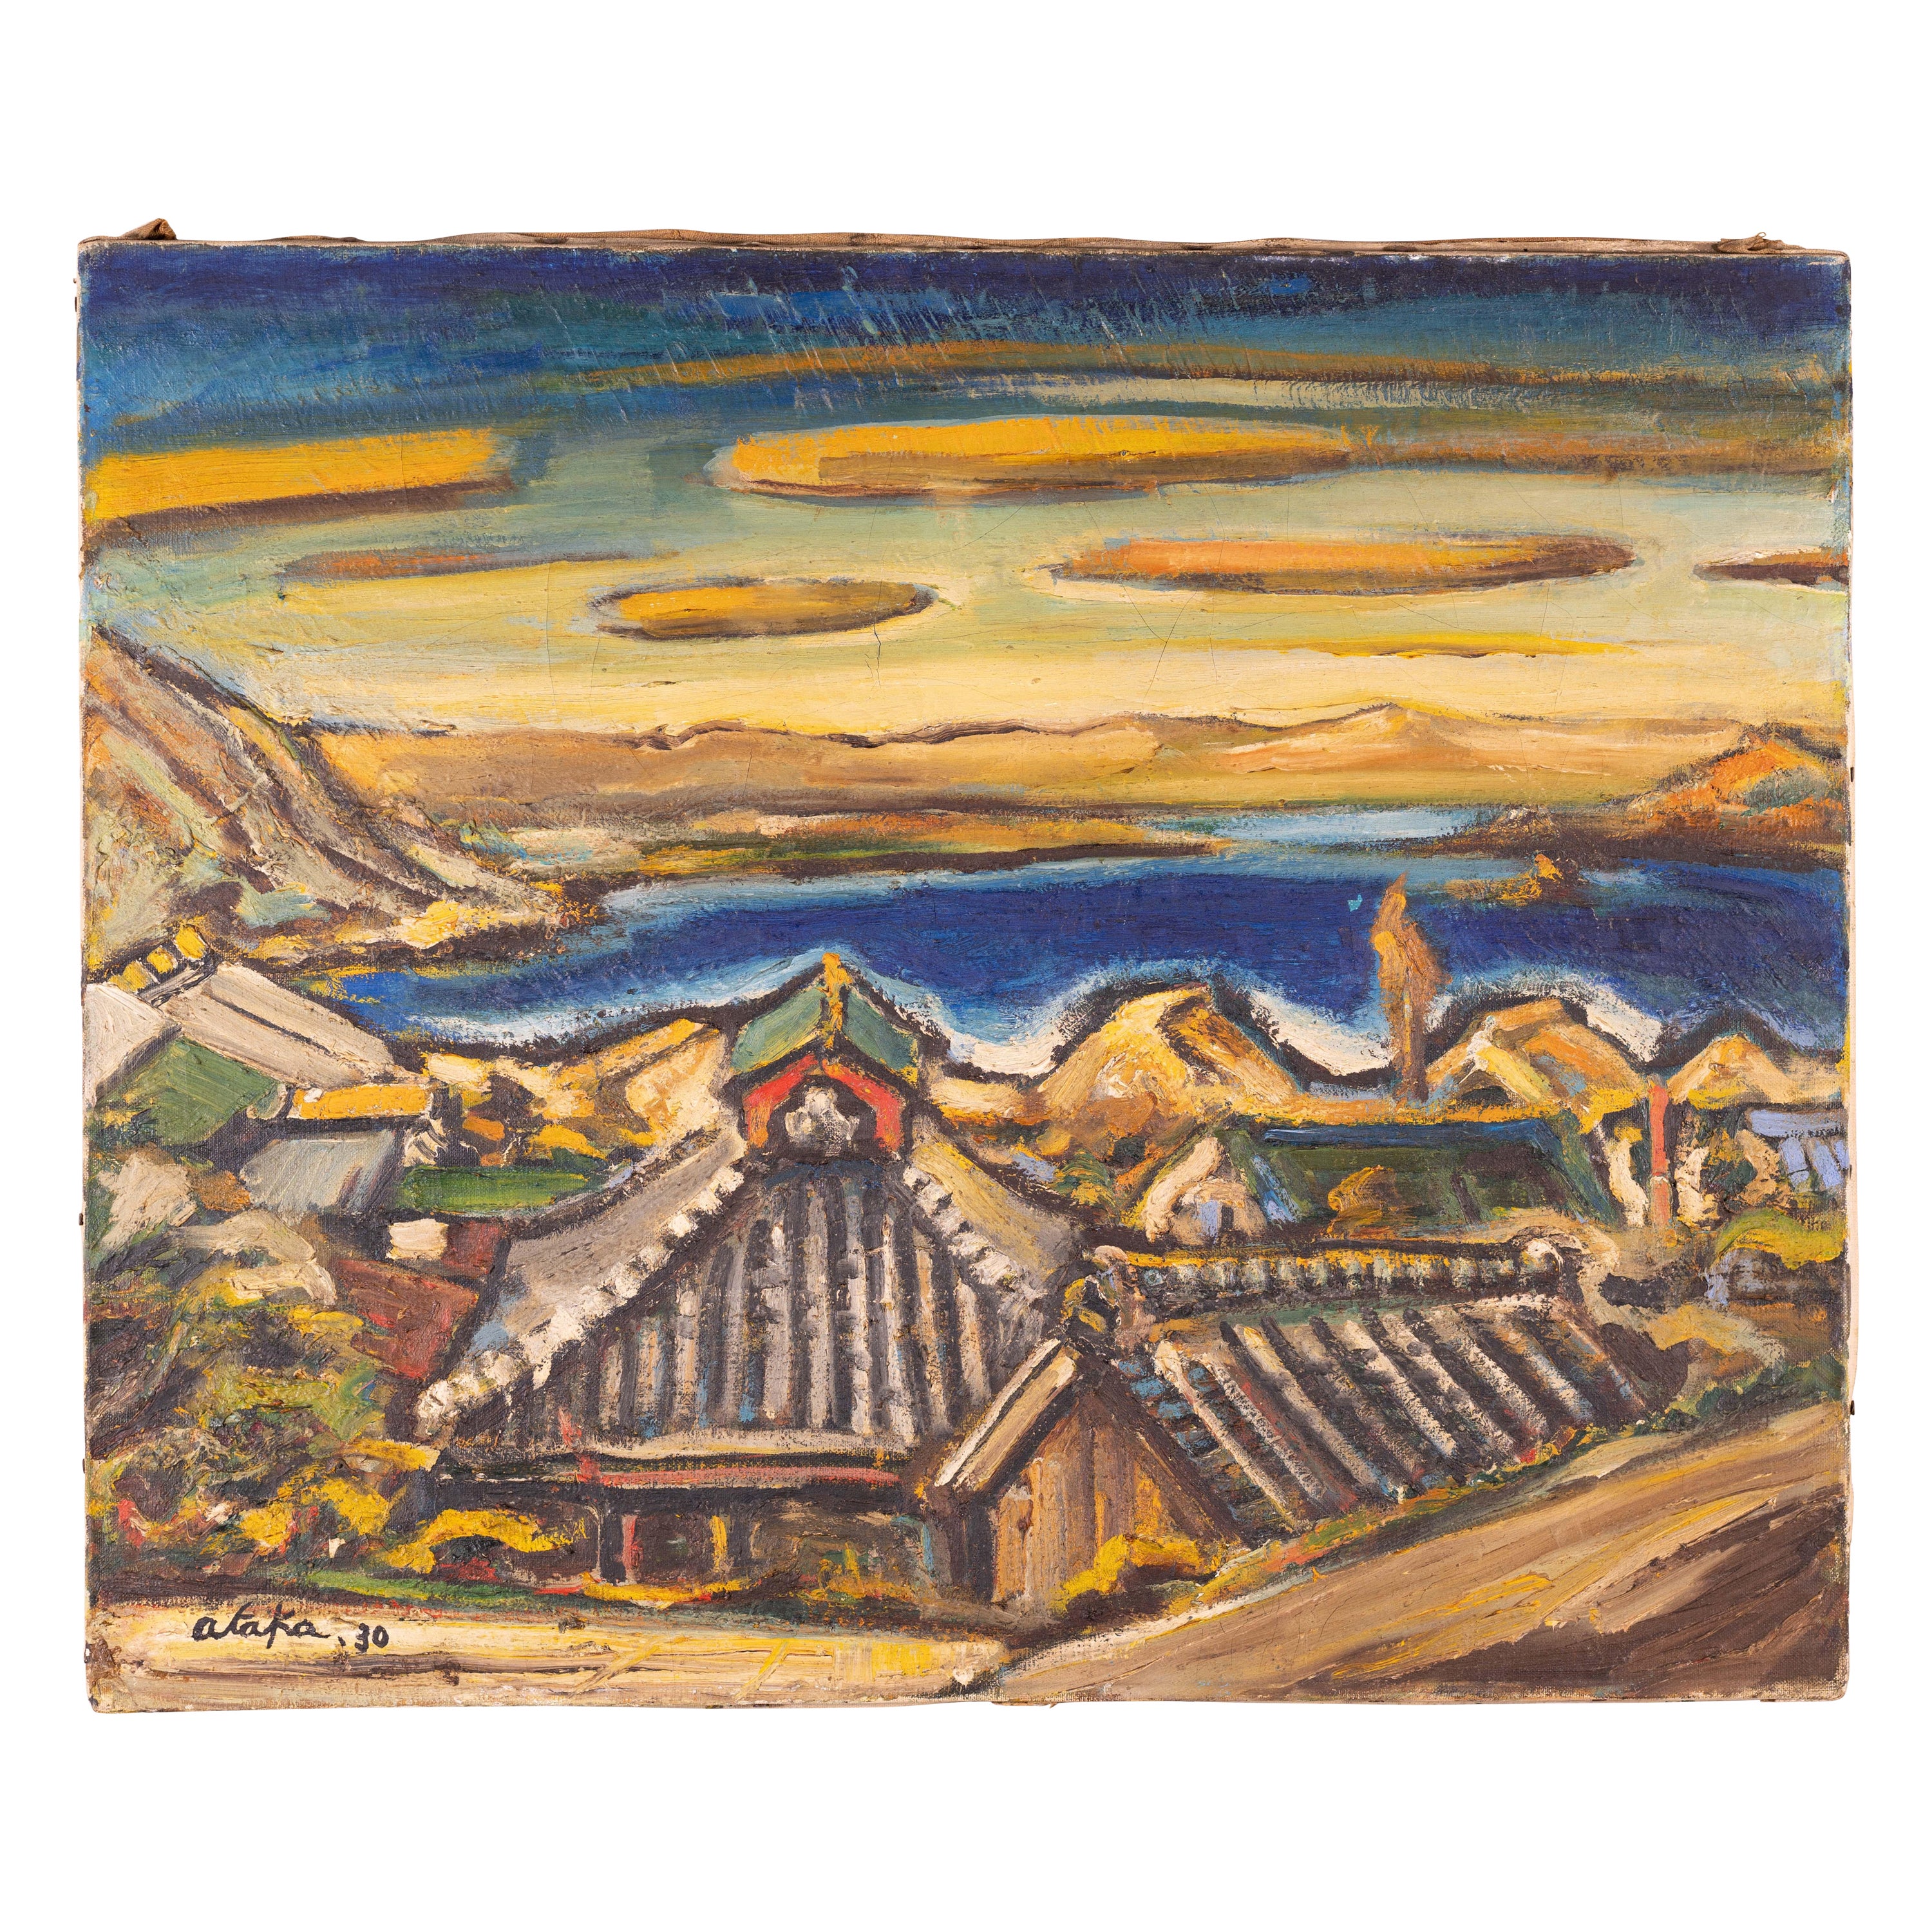 Japanisches modernistisches Gemälde eines Meeresdorfes von Torao Ataka, datiert 1930